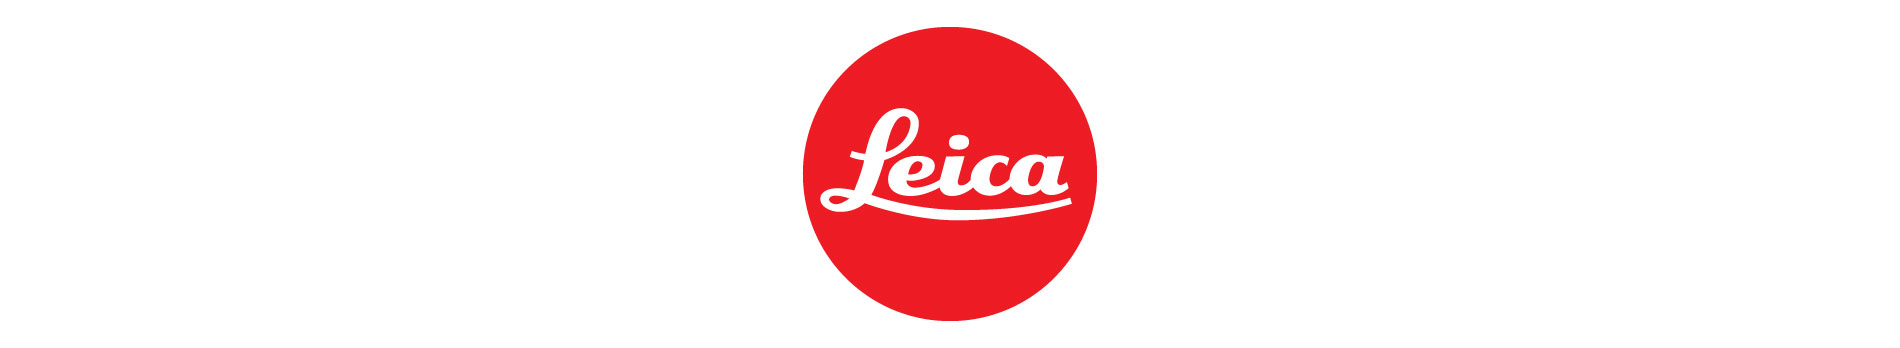 Leica-top